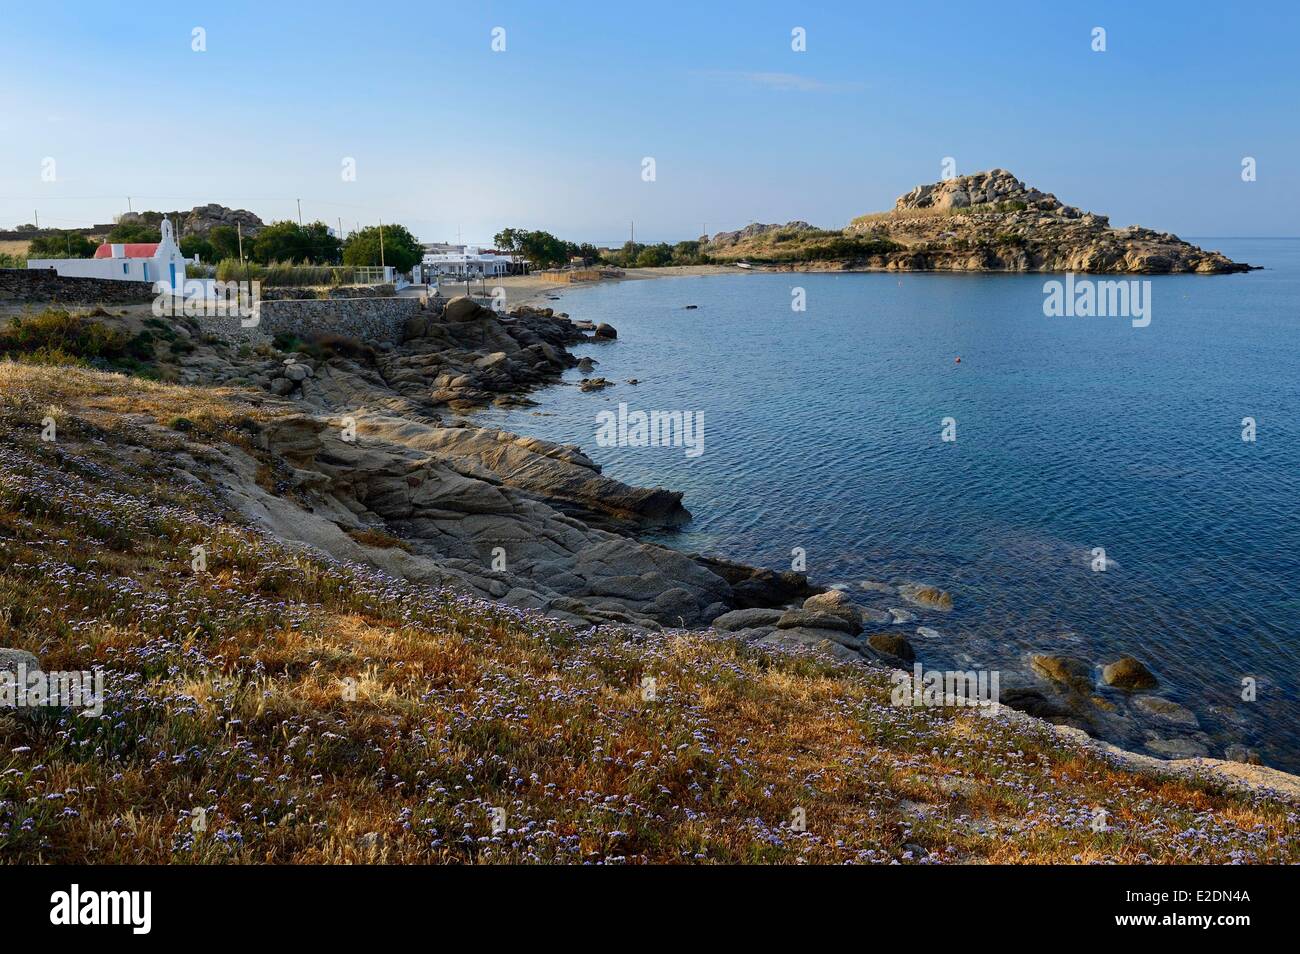 Greece Cyclades islands Mykonos island village of Platis Gialos Stock Photo